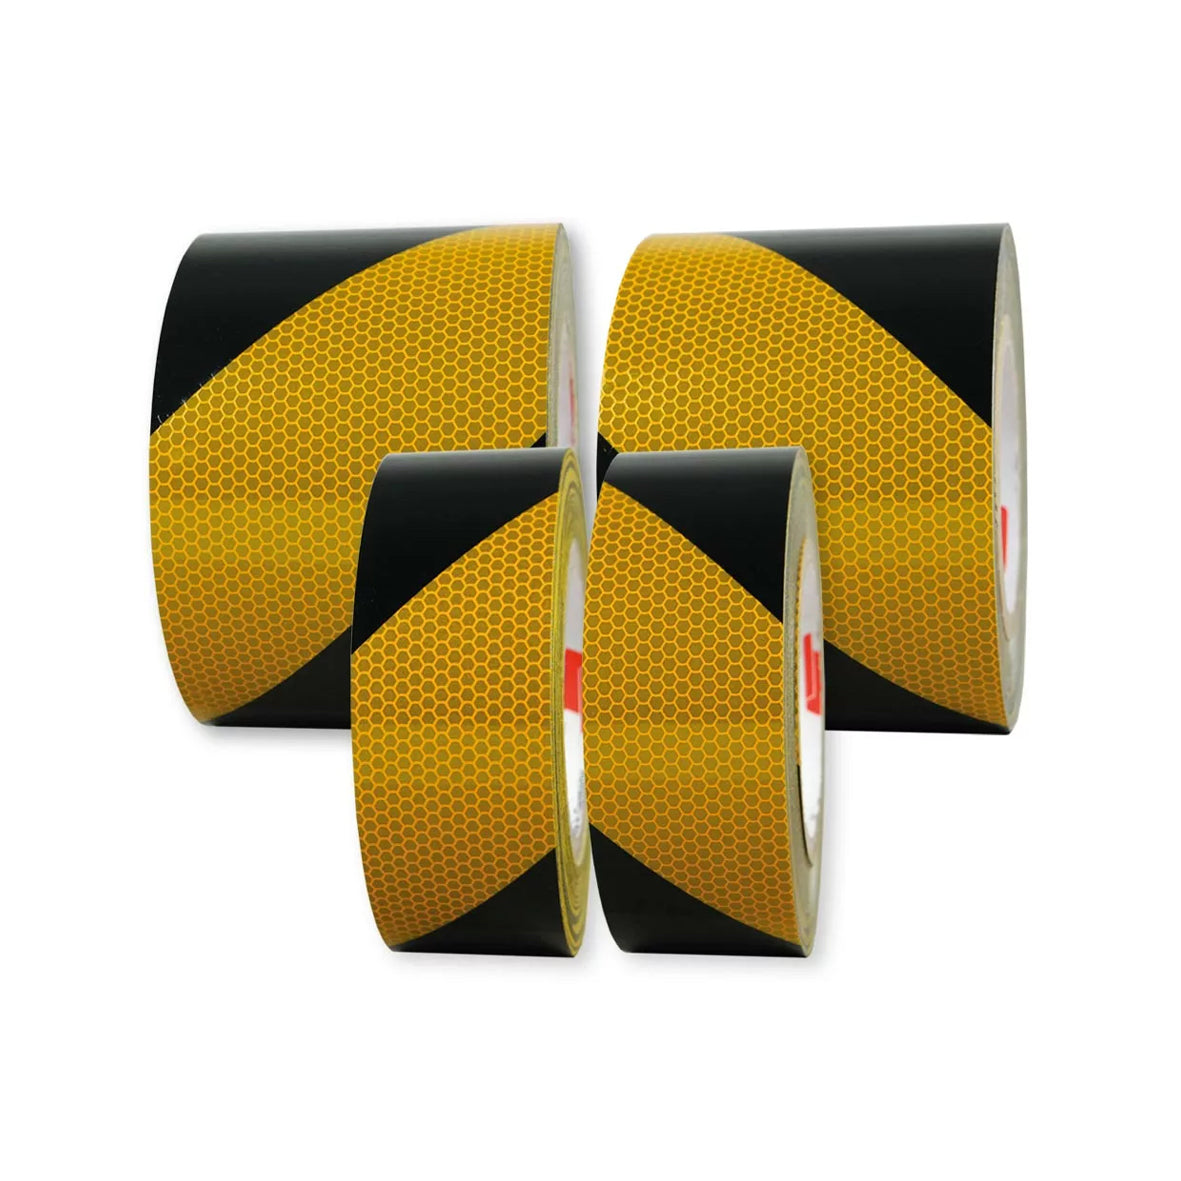 Warnmarkierungsband R2, für Fahrzeuge, R2, gelb-schwarz, 25 m x 100 mm, linksweisend